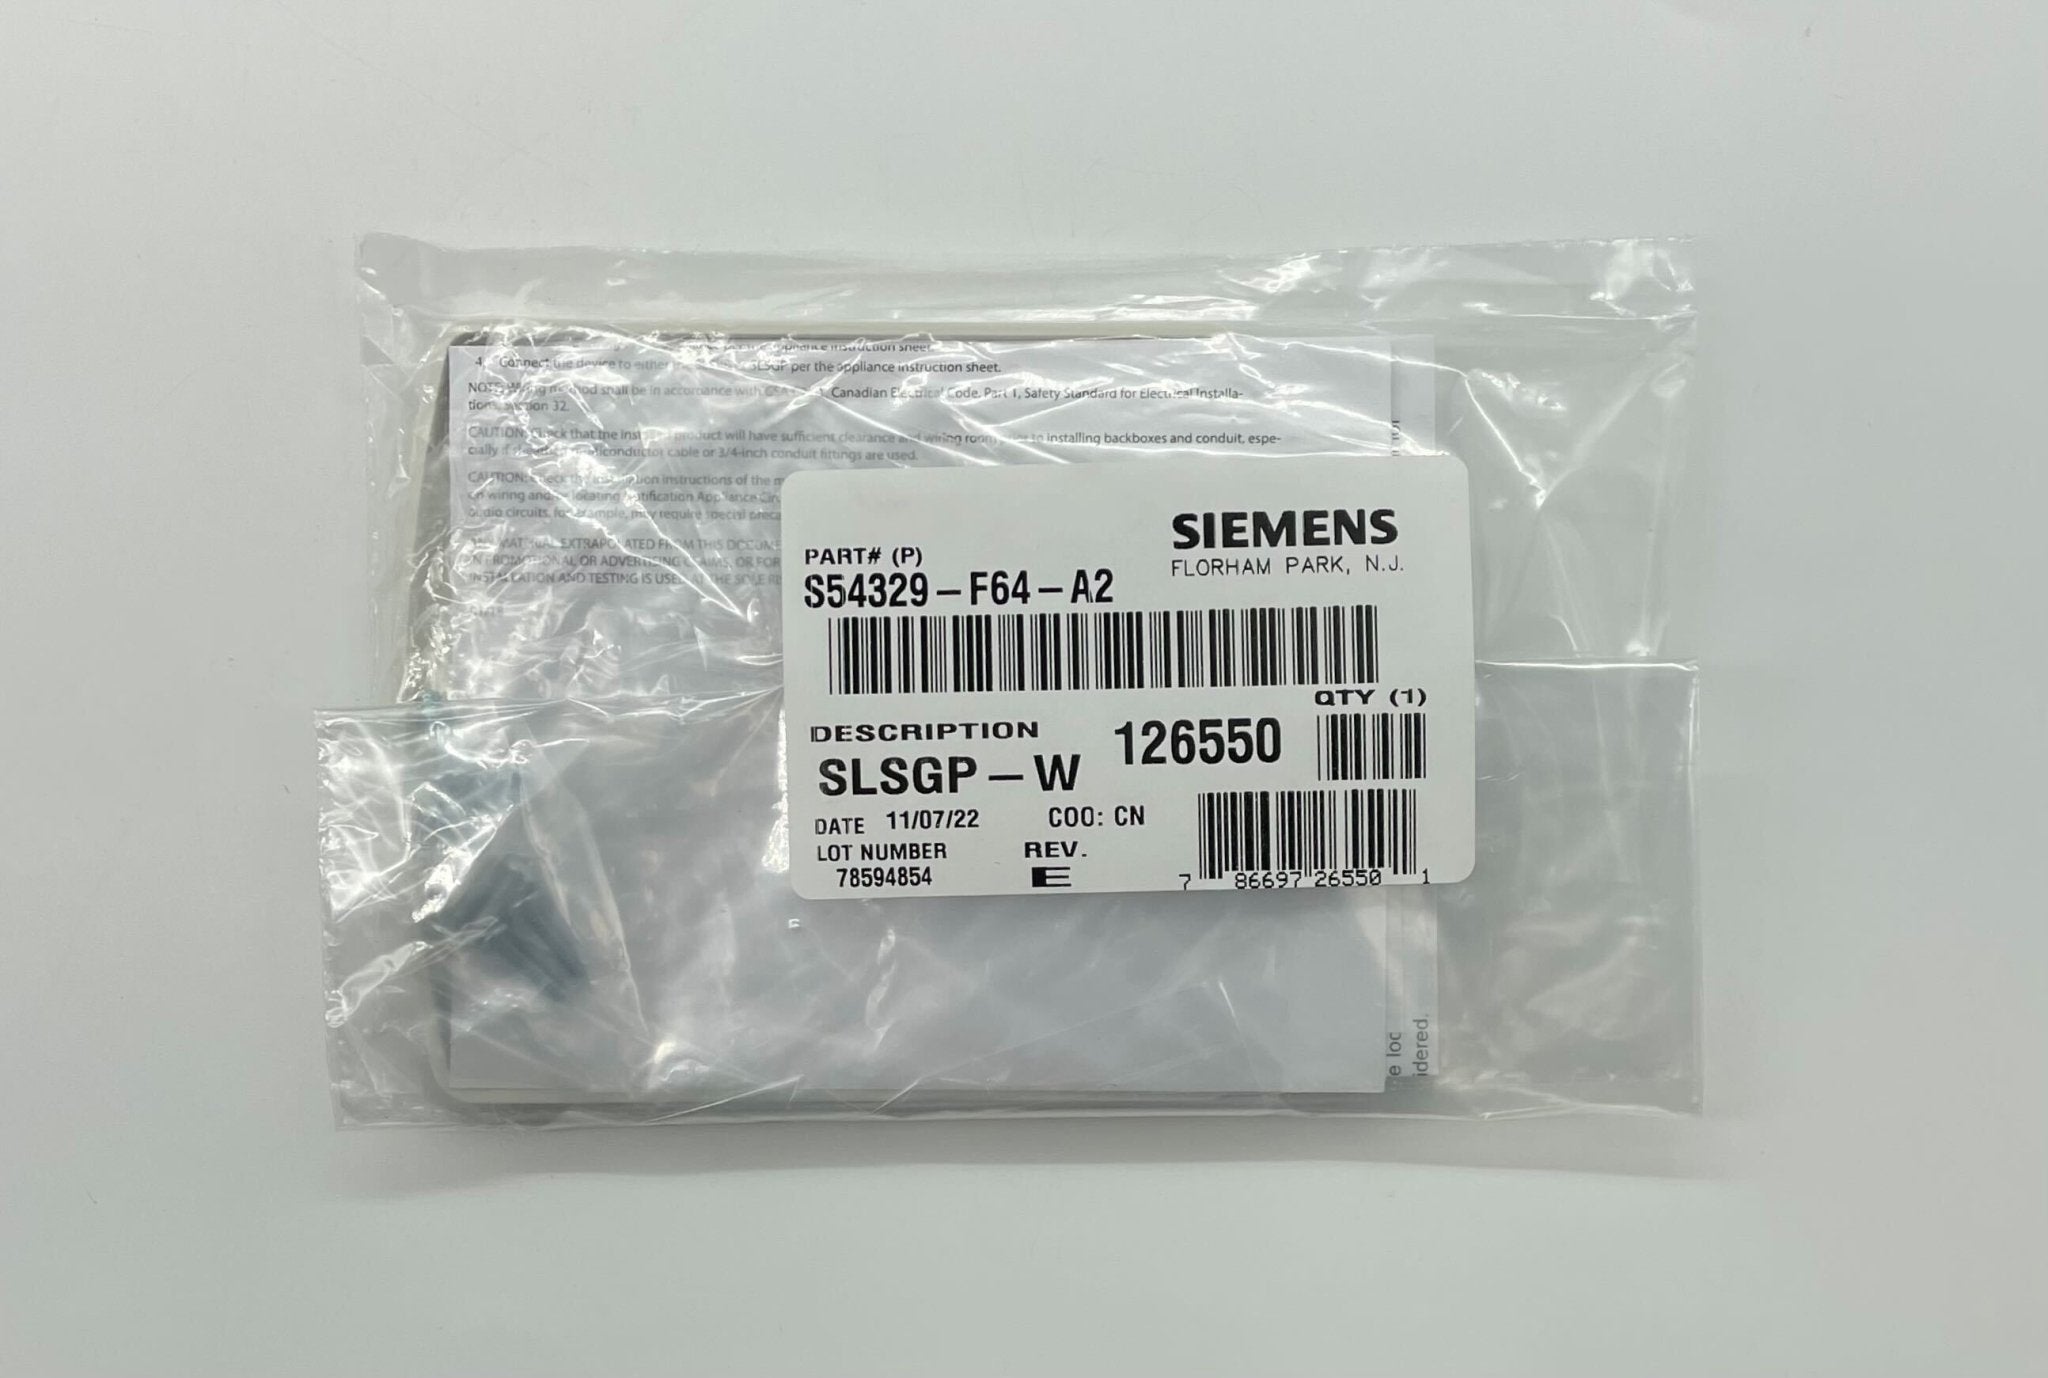 Siemens SLSGP-W - The Fire Alarm Supplier